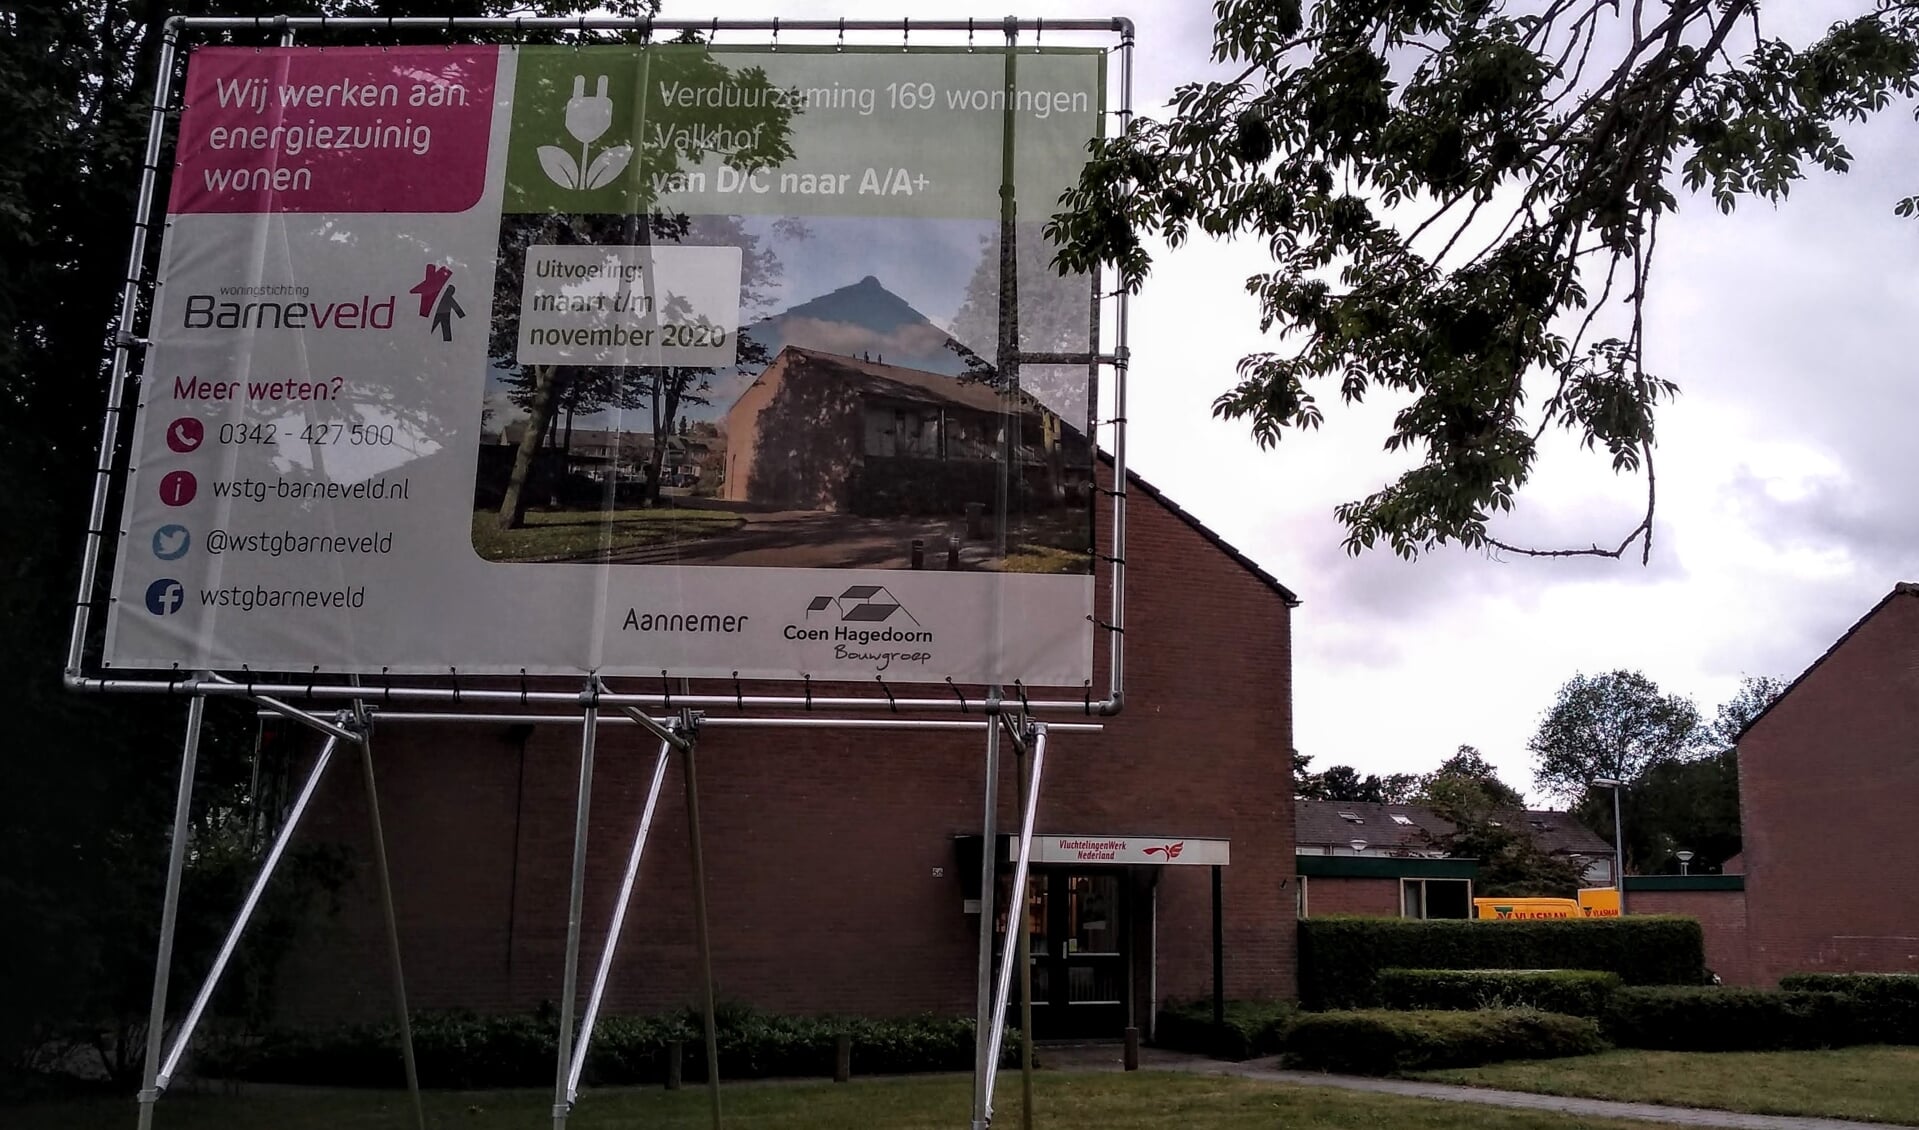 De afgelopen jaren zijn onder andere huurwoningen aan de Valkhof in Barneveld verduurzaamd.